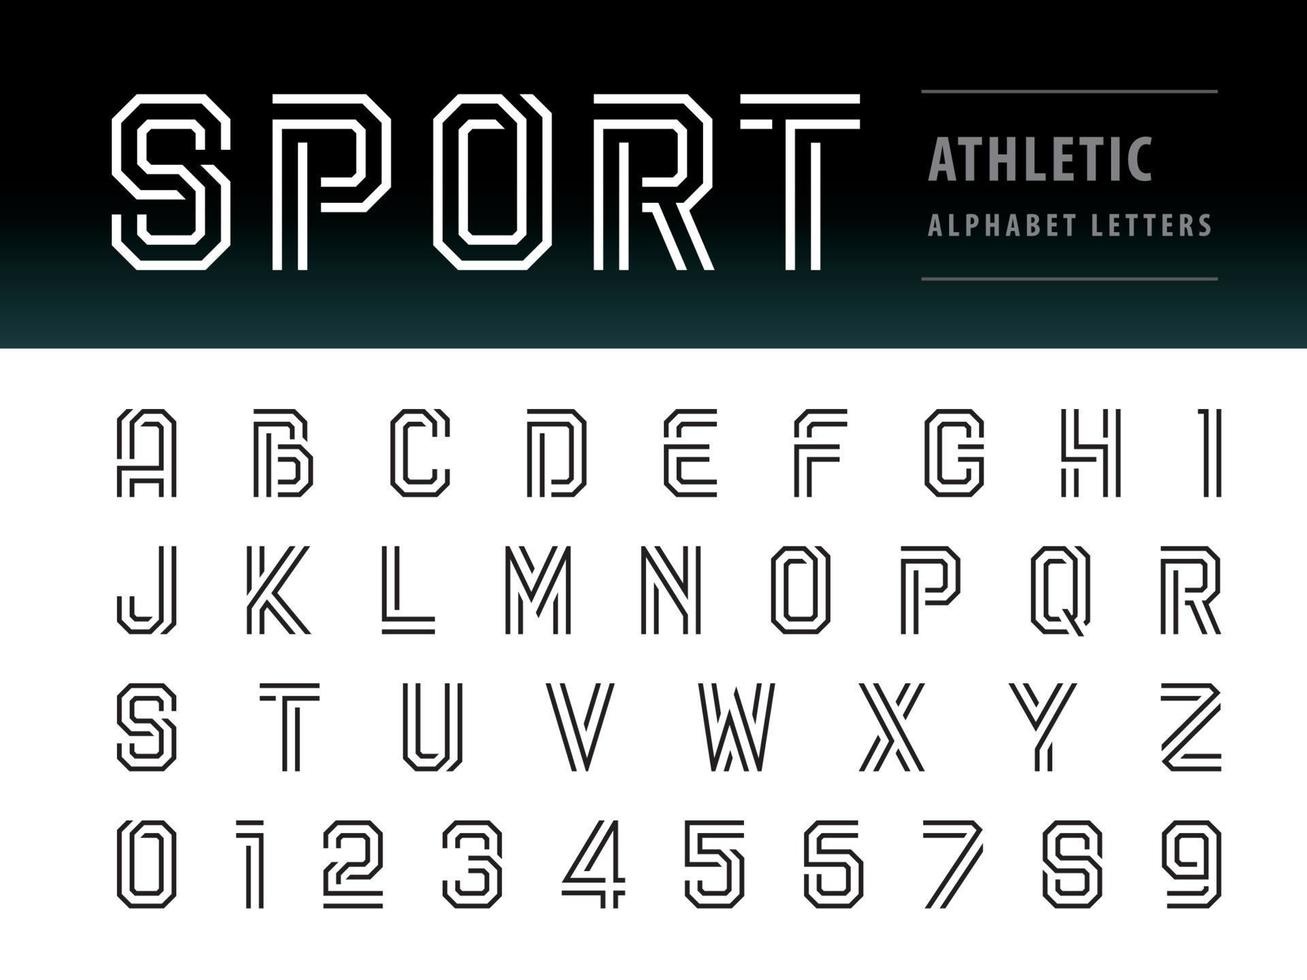 lettere e numeri dell'alfabeto atletico moderno, carattere leggero per tecnologia, sport, moda, futuro futuristico vettore